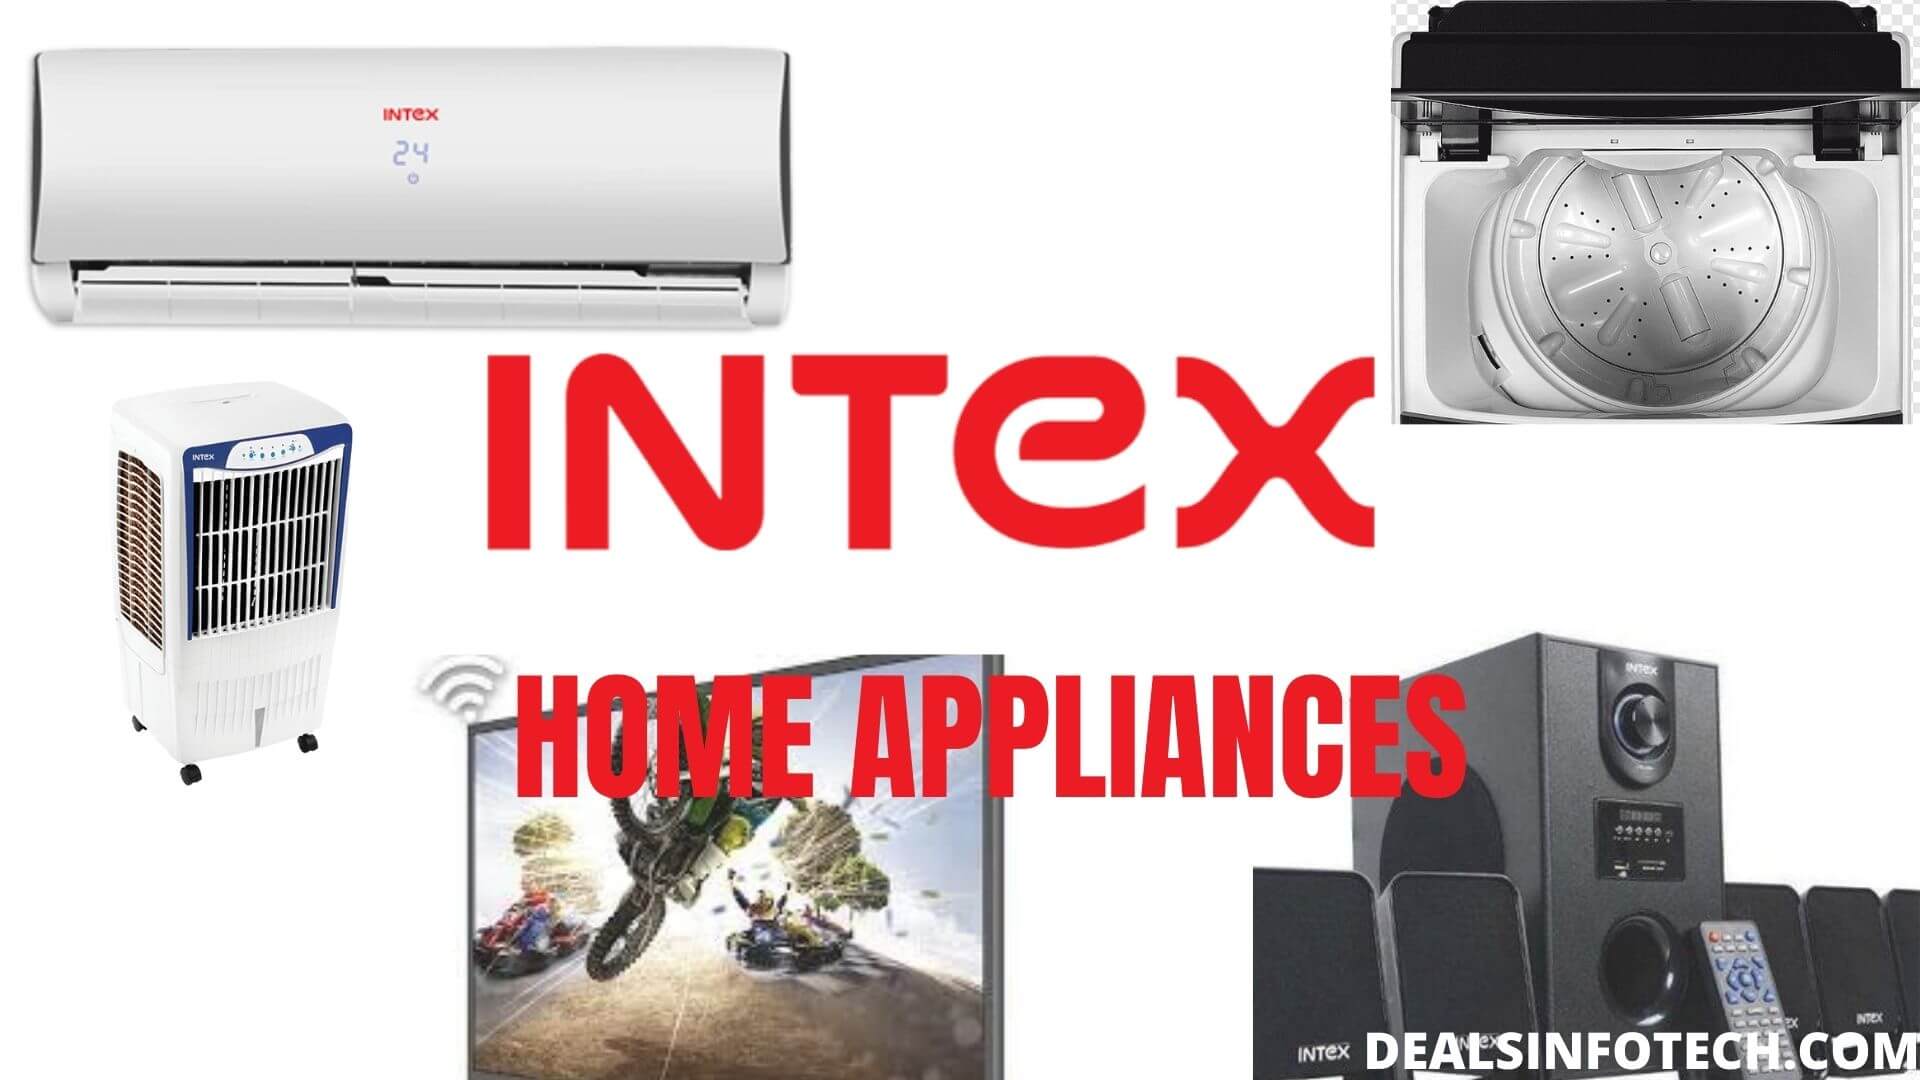 Intex home appliances